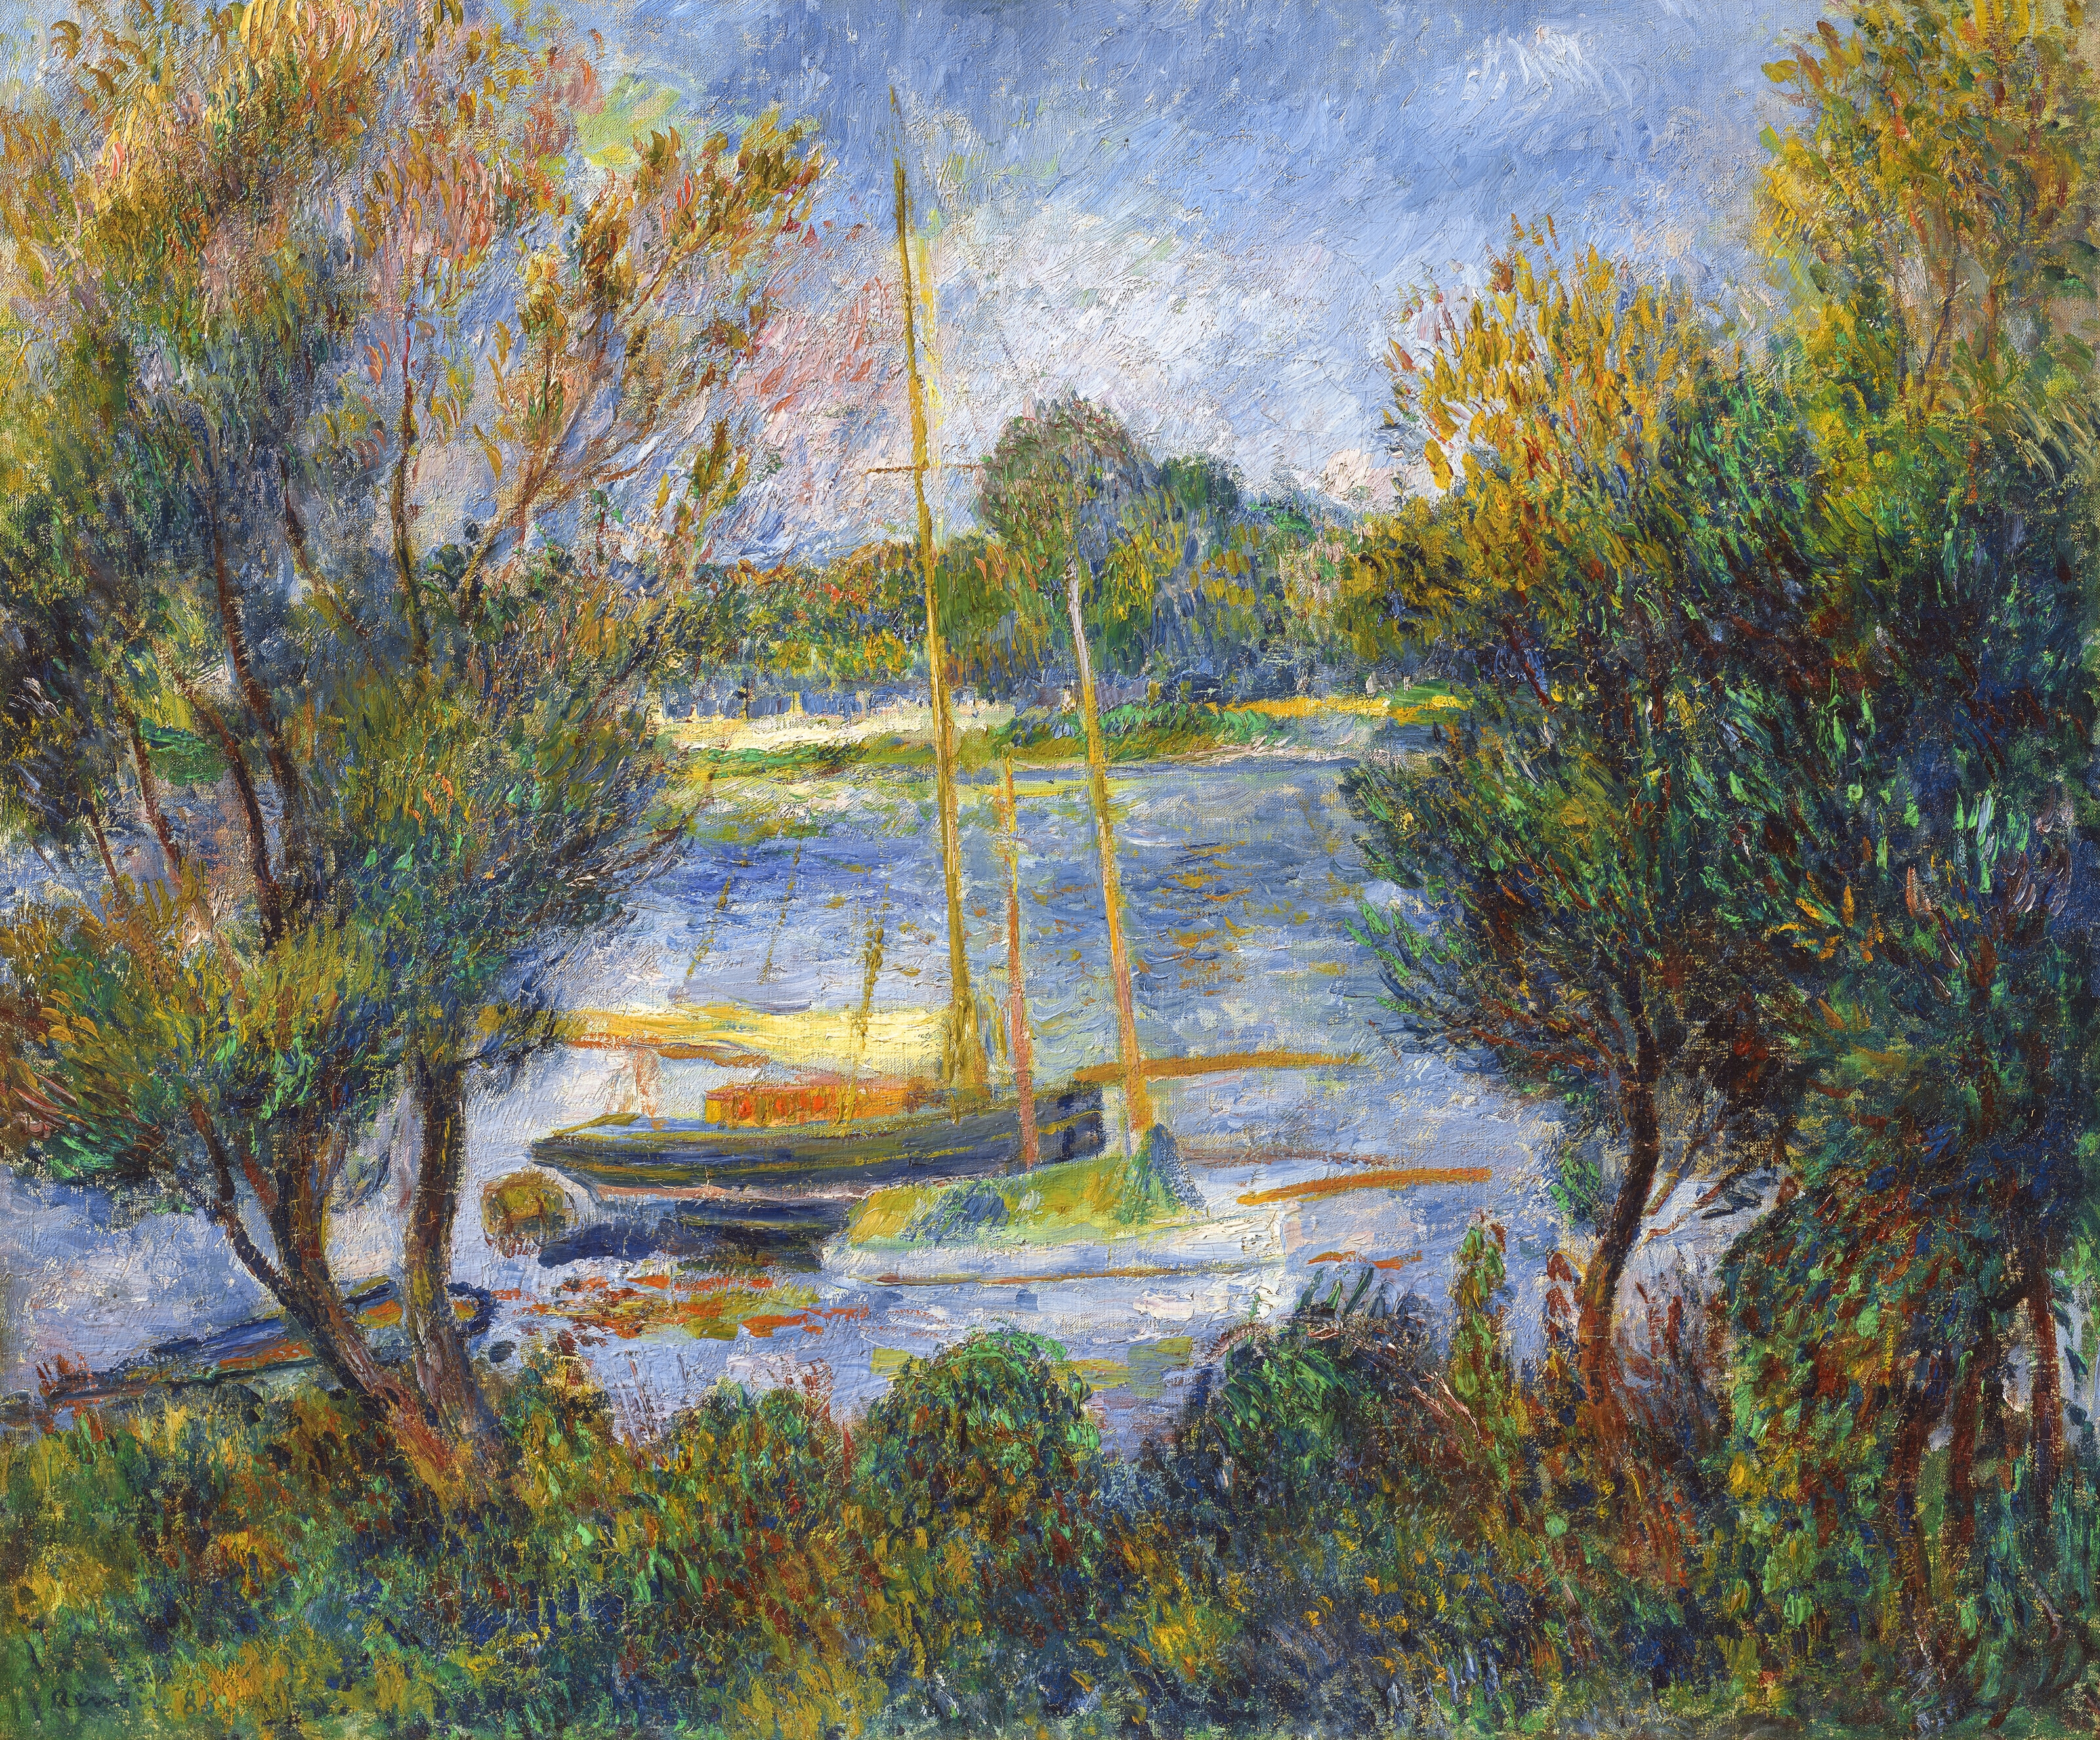 Artwork by Pierre-Auguste Renoir, La Seine à Argenteuil, Made of oil on canvas